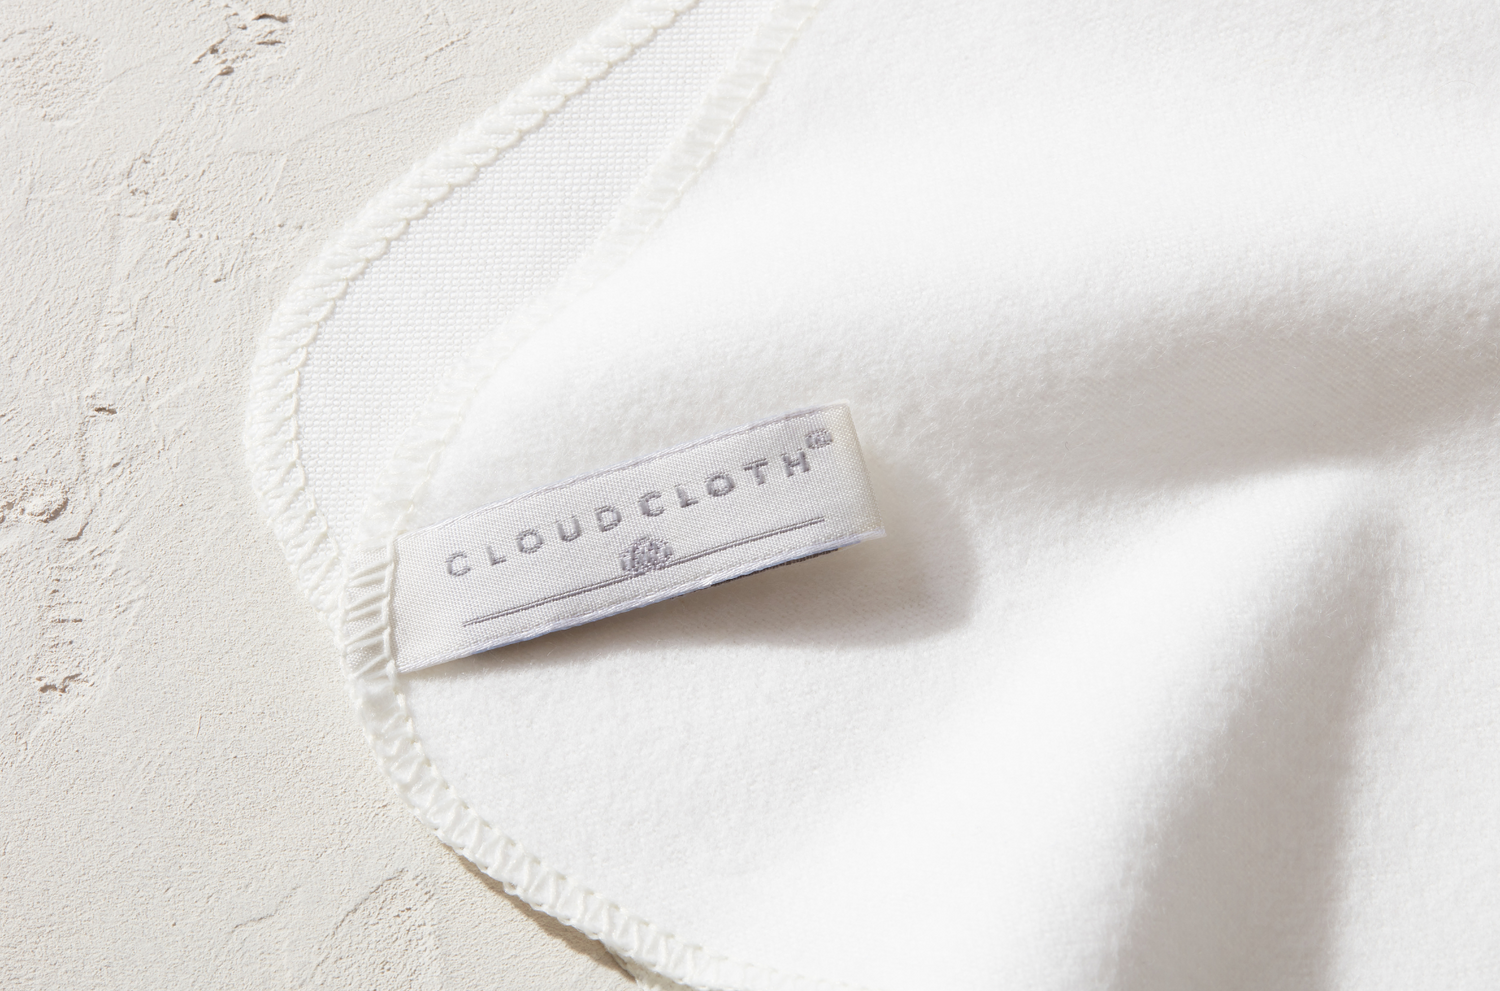 CloudCloth Organic Cotton Reusable Facial Cloths (7pck)